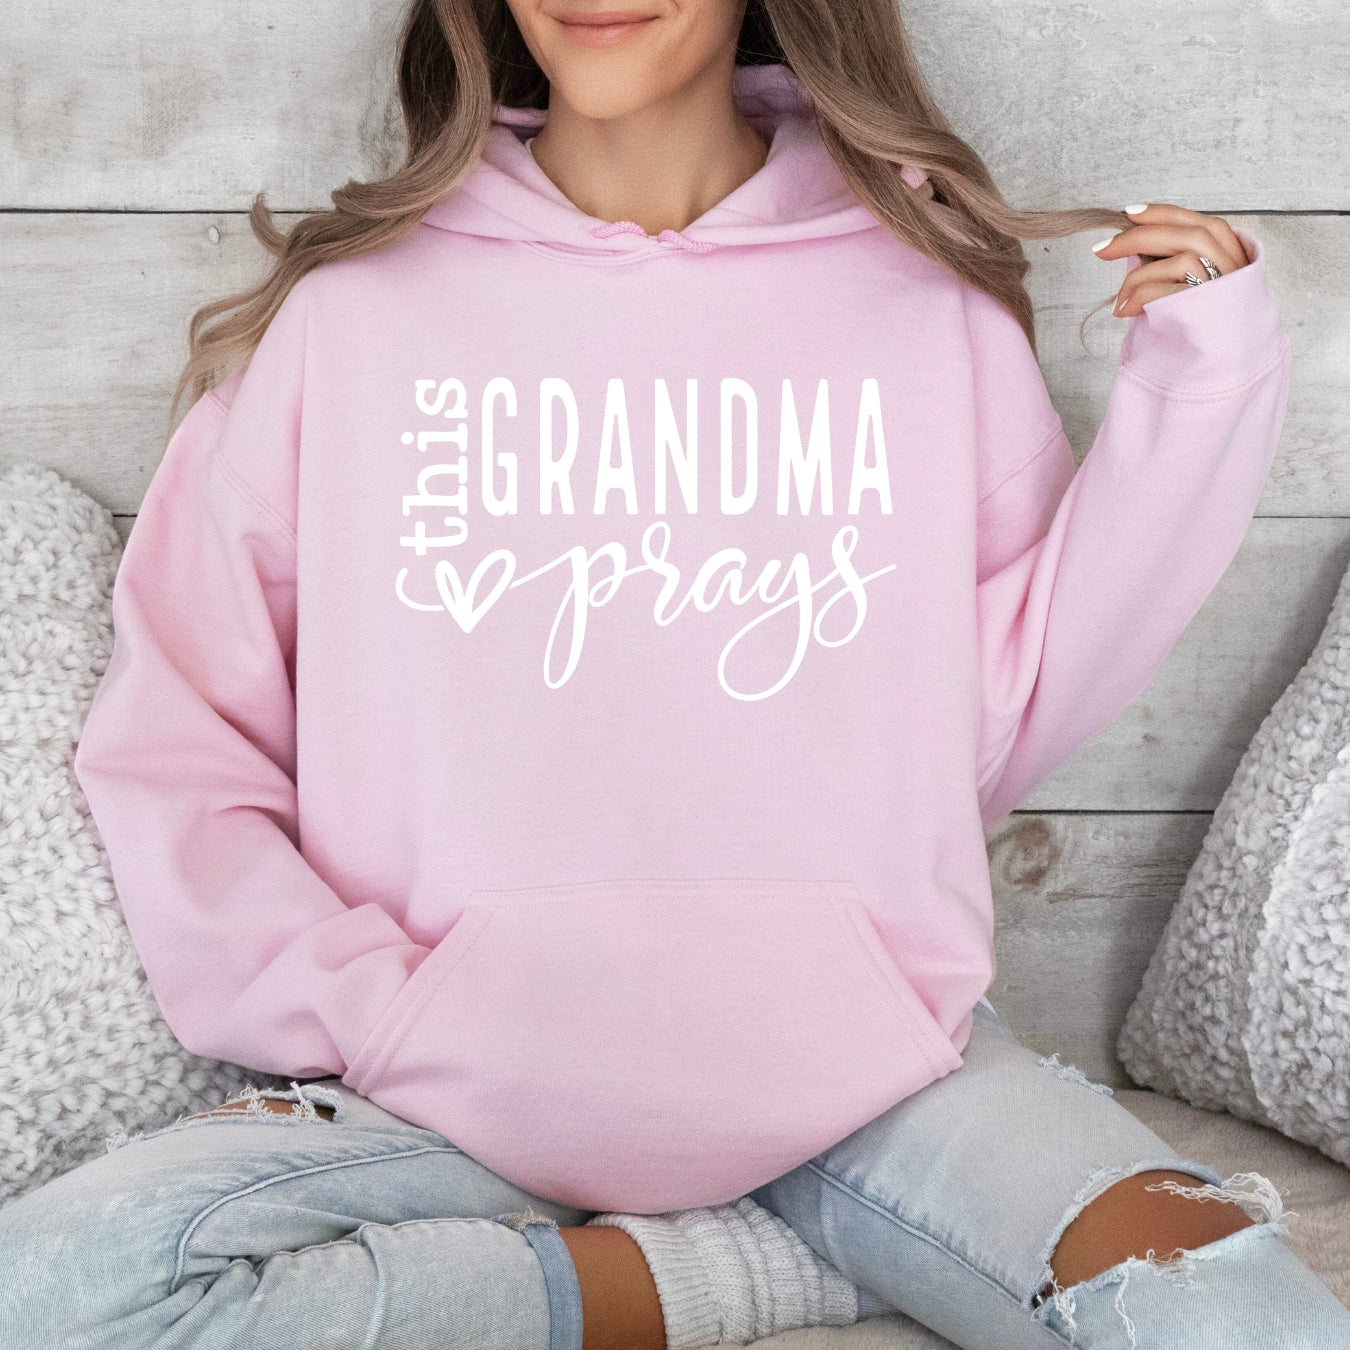 This Grandma Prays Women's Hoodie